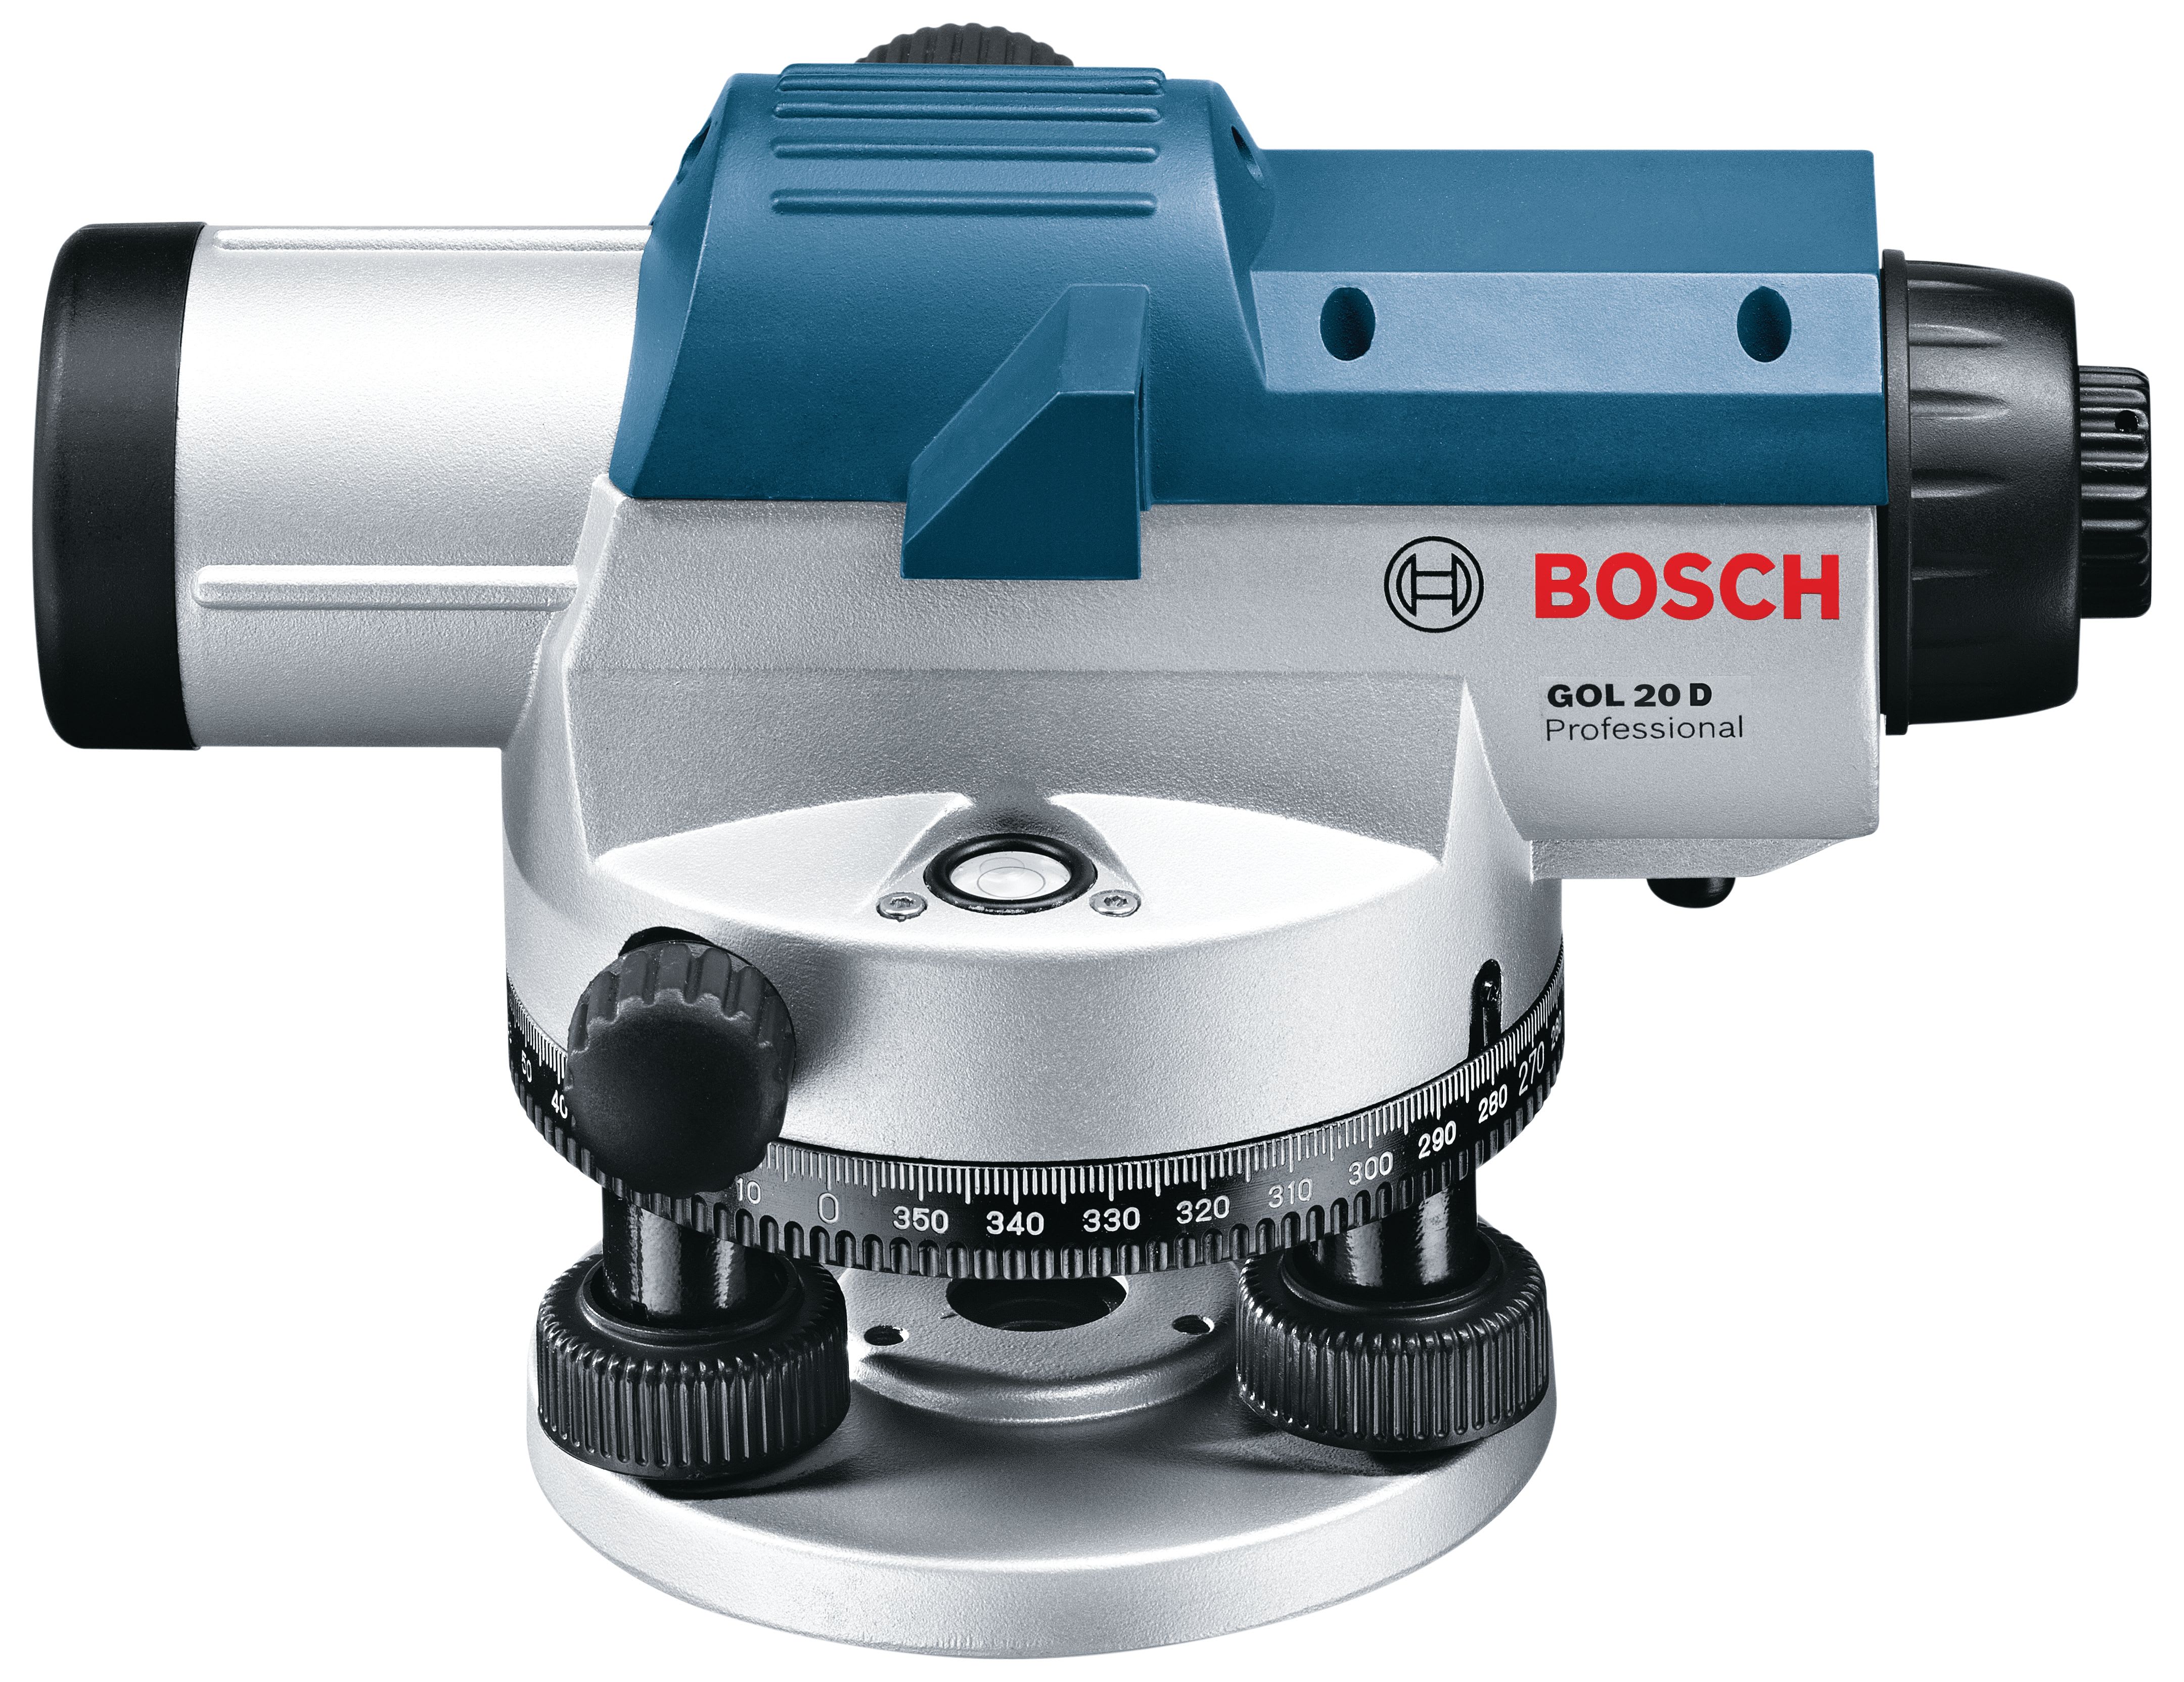 Bosch Professional GOL 20 D + BT 160